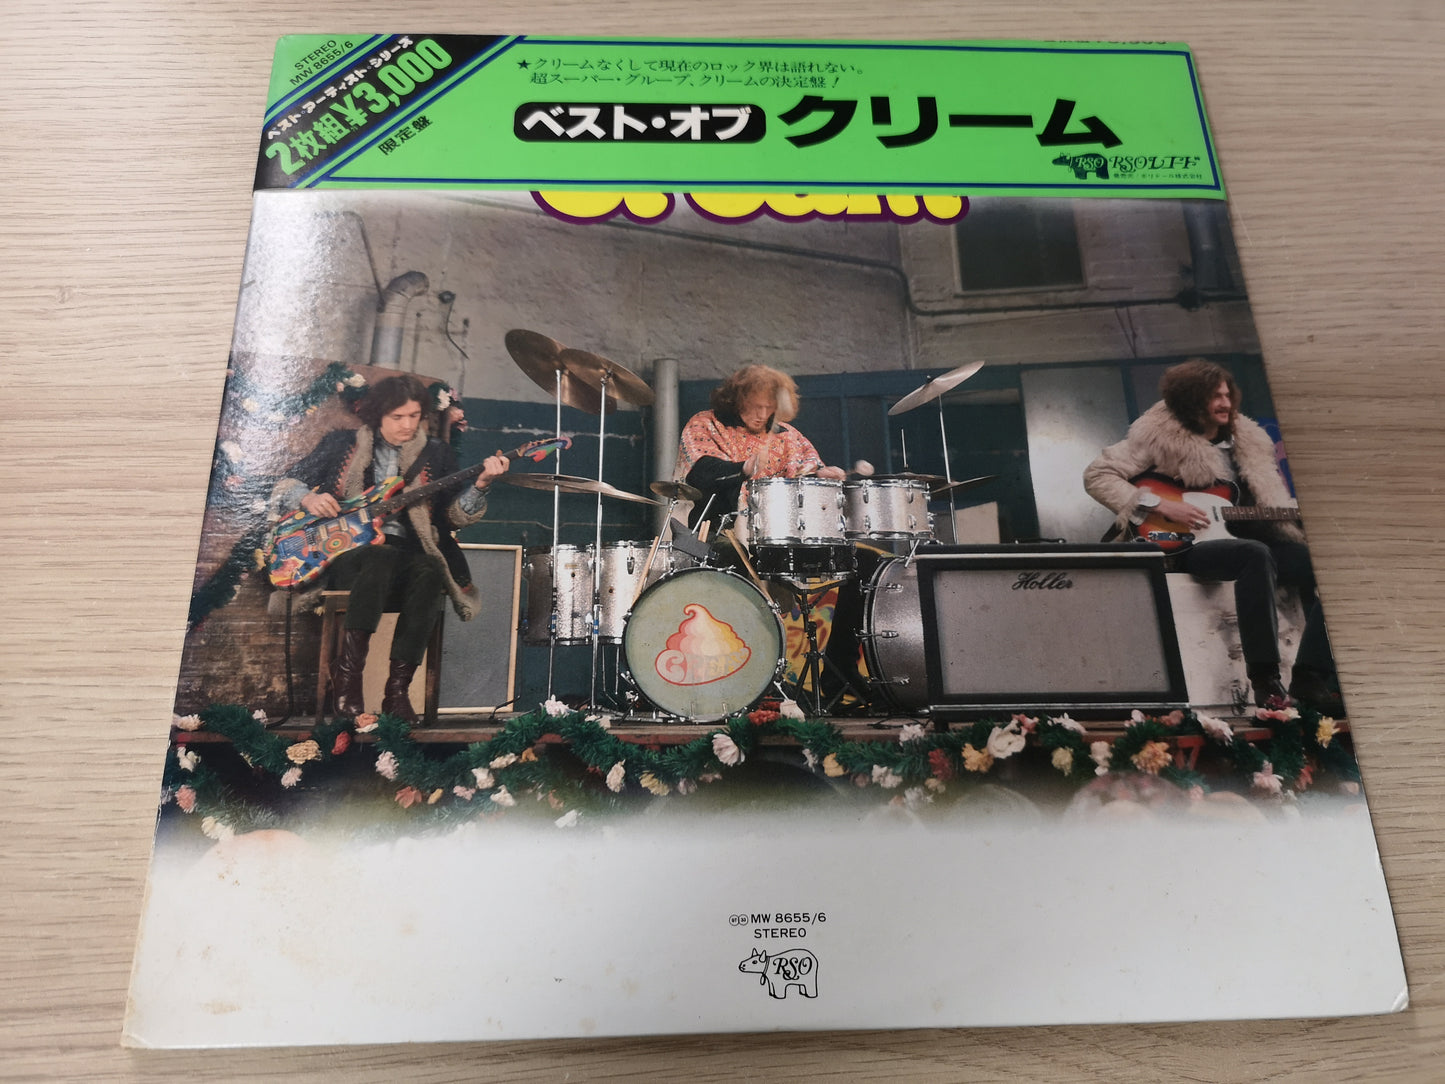 Cream "Best of Cream" Orig Japan 1977 2 Lps VG++/M- (Cap Obi)